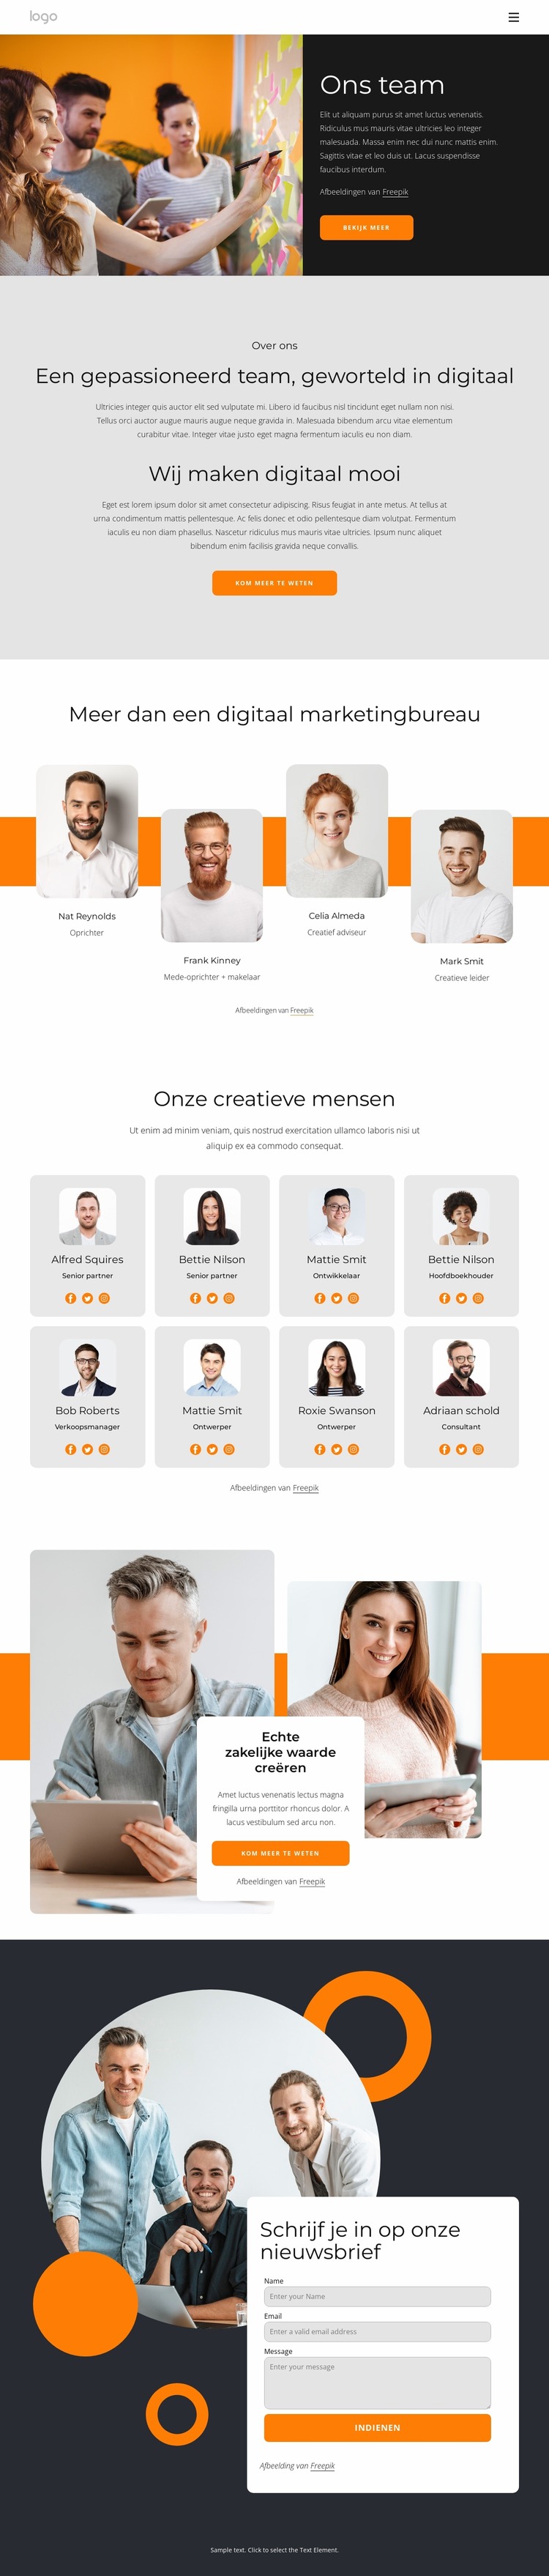 We zijn creatieve mensen met grote dromen Joomla-sjabloon